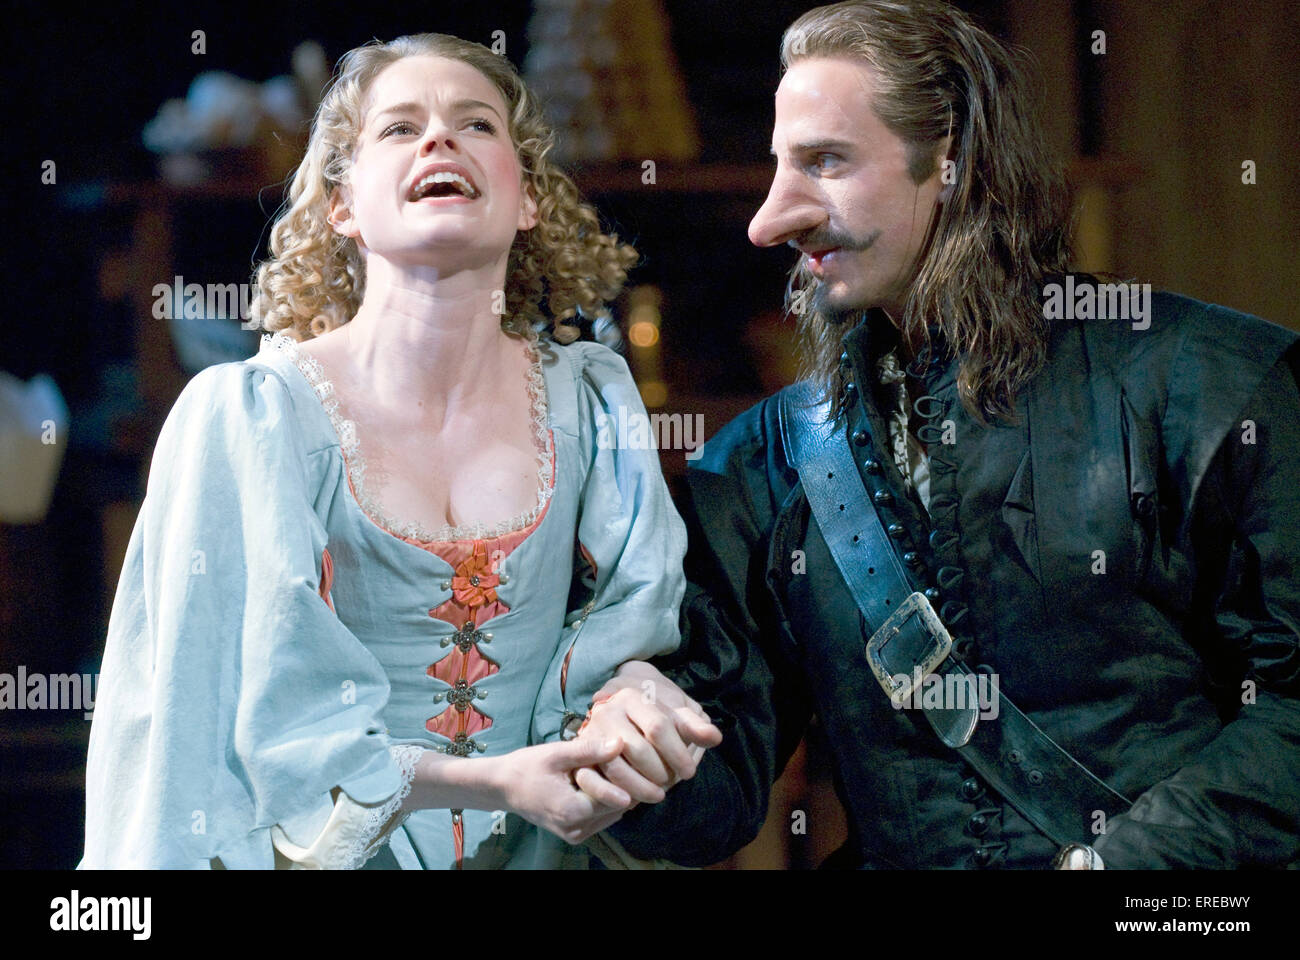 Joseph Fiennes als Cyrano de Bergerac und Alice Eve als Roxane in "Cyrano de Bergerac", Chichester Festival Theatre, Mai 2009. Stockfoto